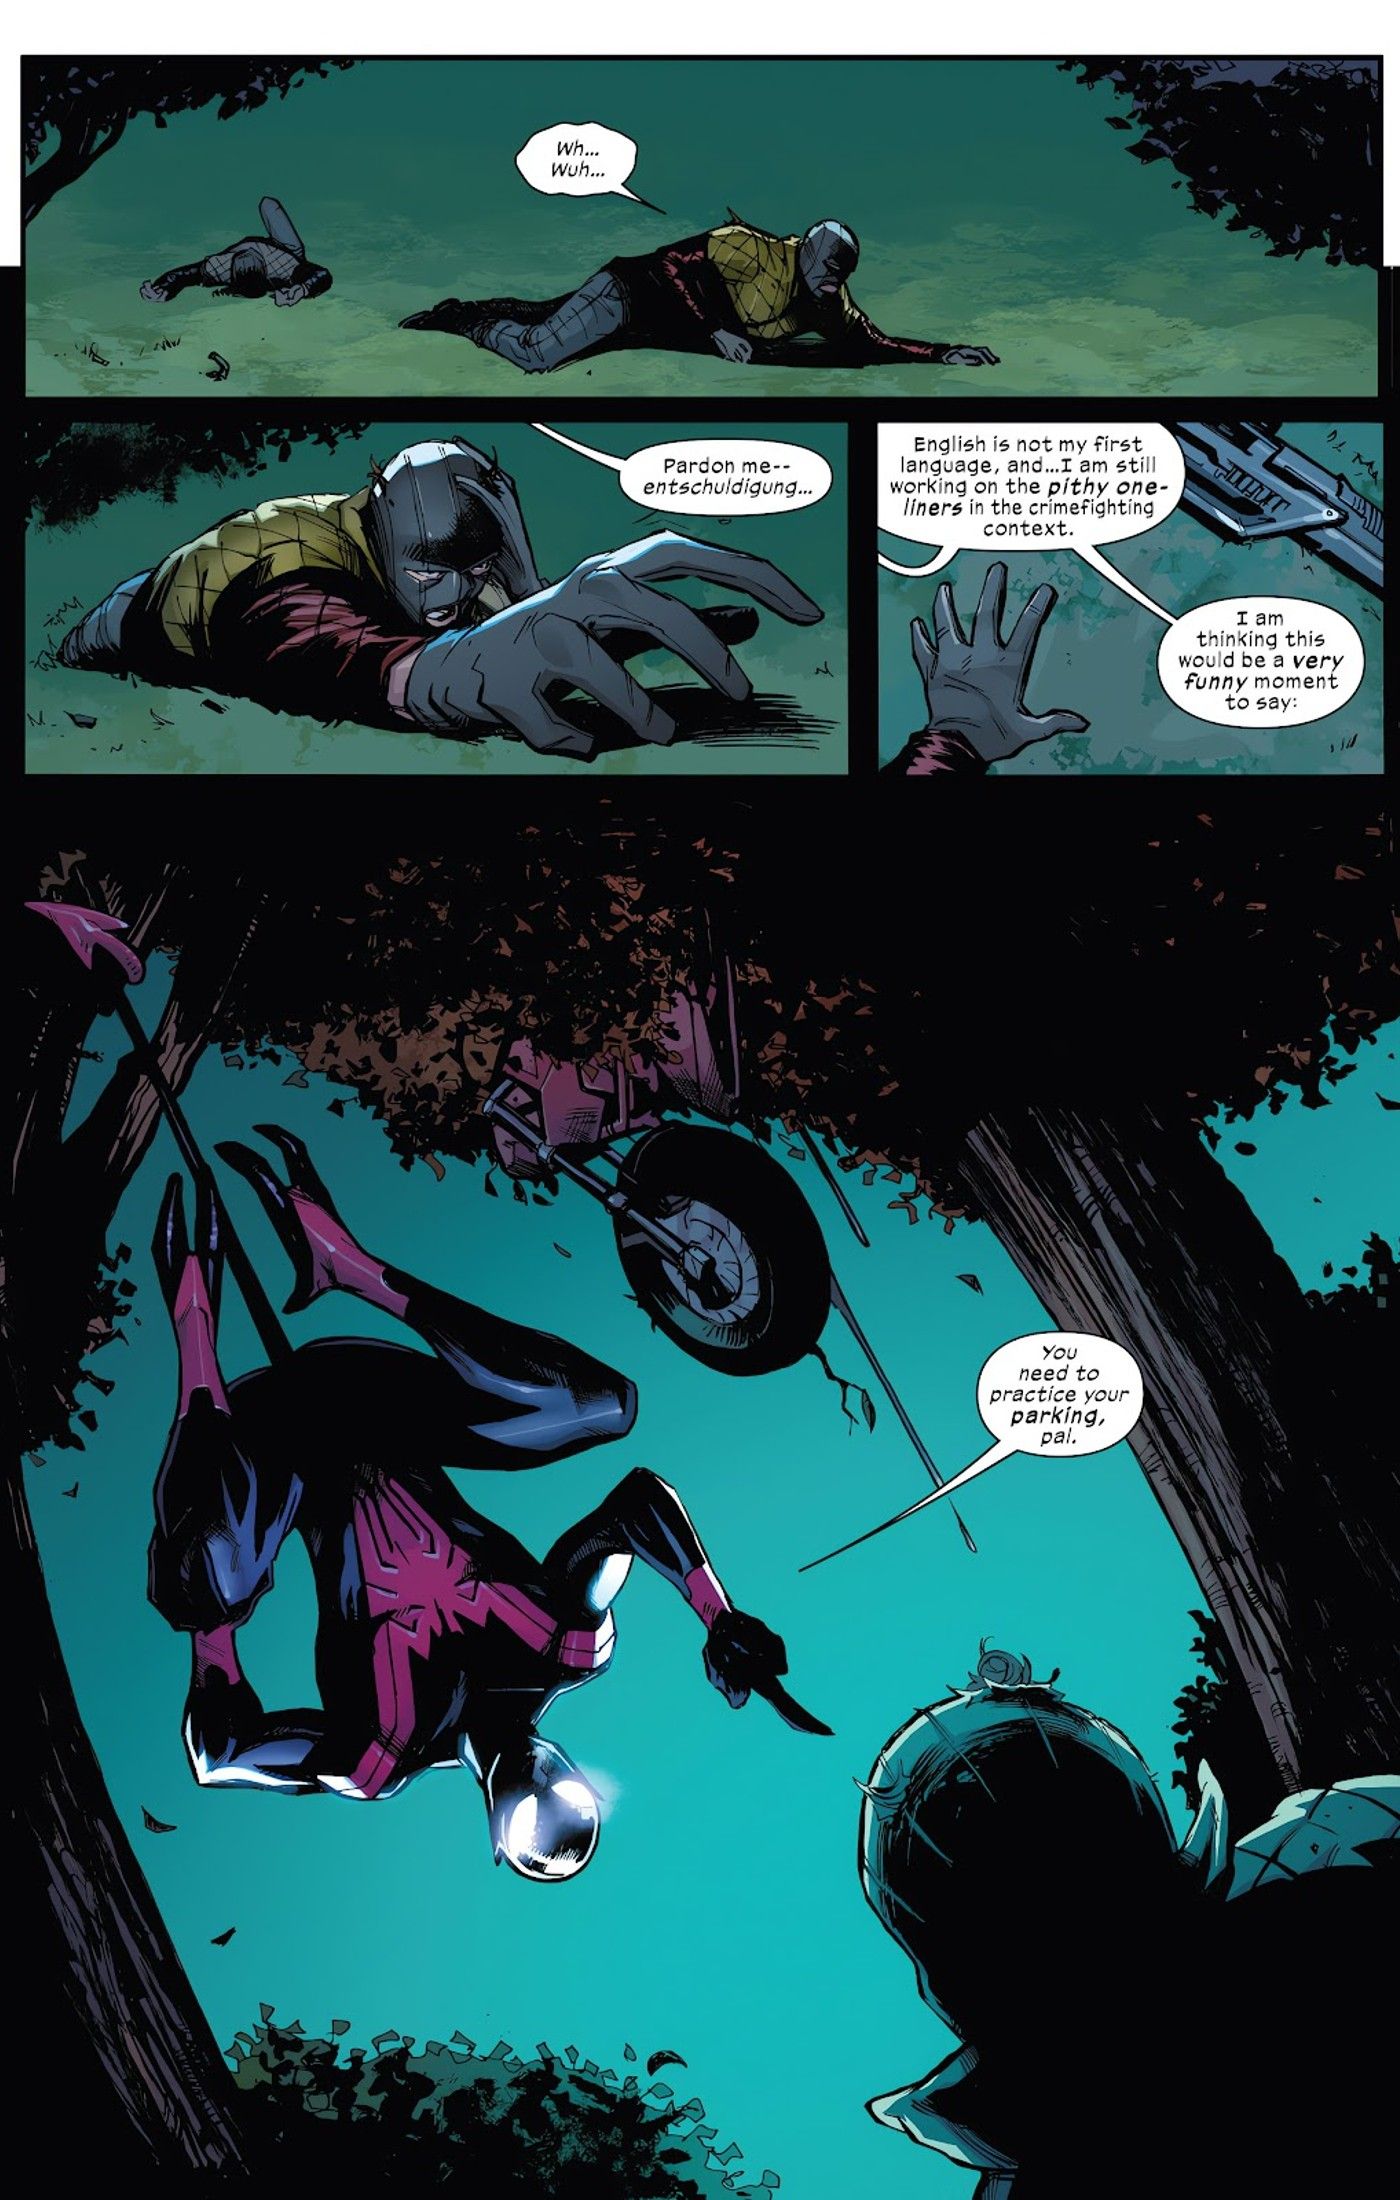 Panels aus Uncanny Spider-Man #1, Nightcrawler Spider-Man macht Witze